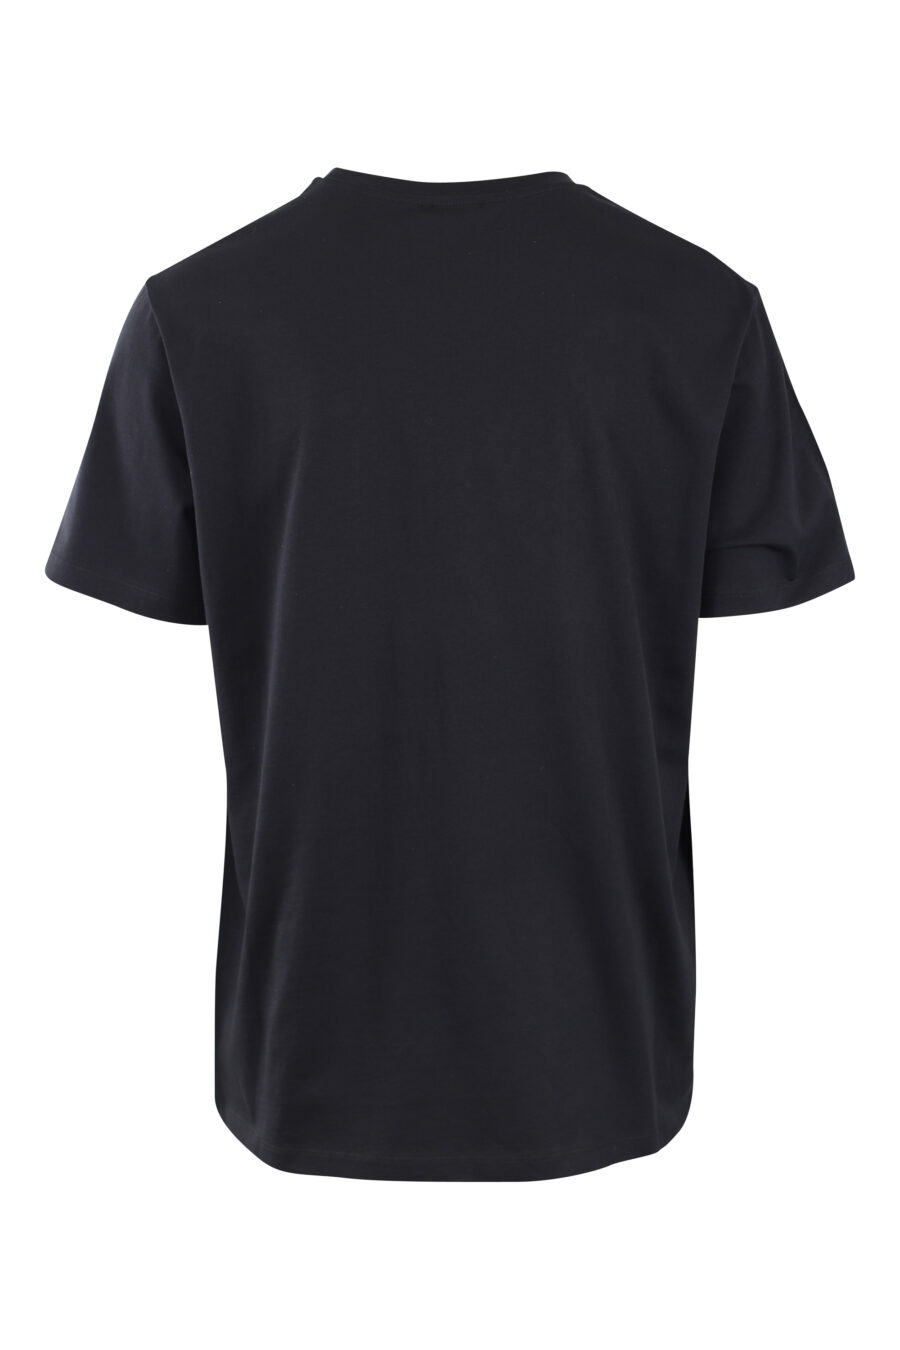 Schwarzes T-Shirt mit schwarzem Samt Maxilogo mit Silber - IMG 2581